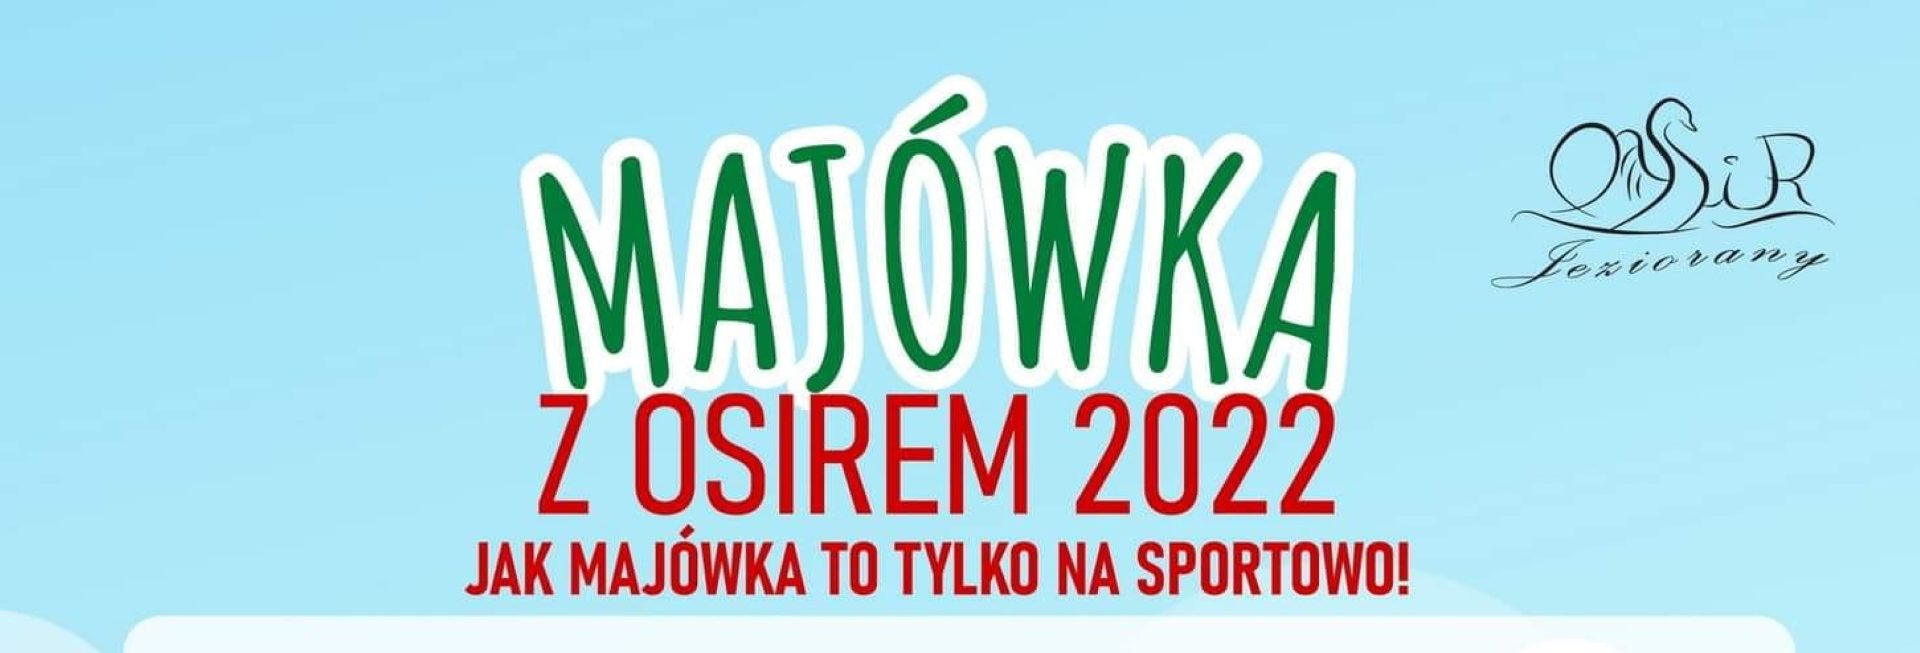 Plakat graficzny zapraszający do Jezioran na Sportową Majówkę w Jezioranach 2022.